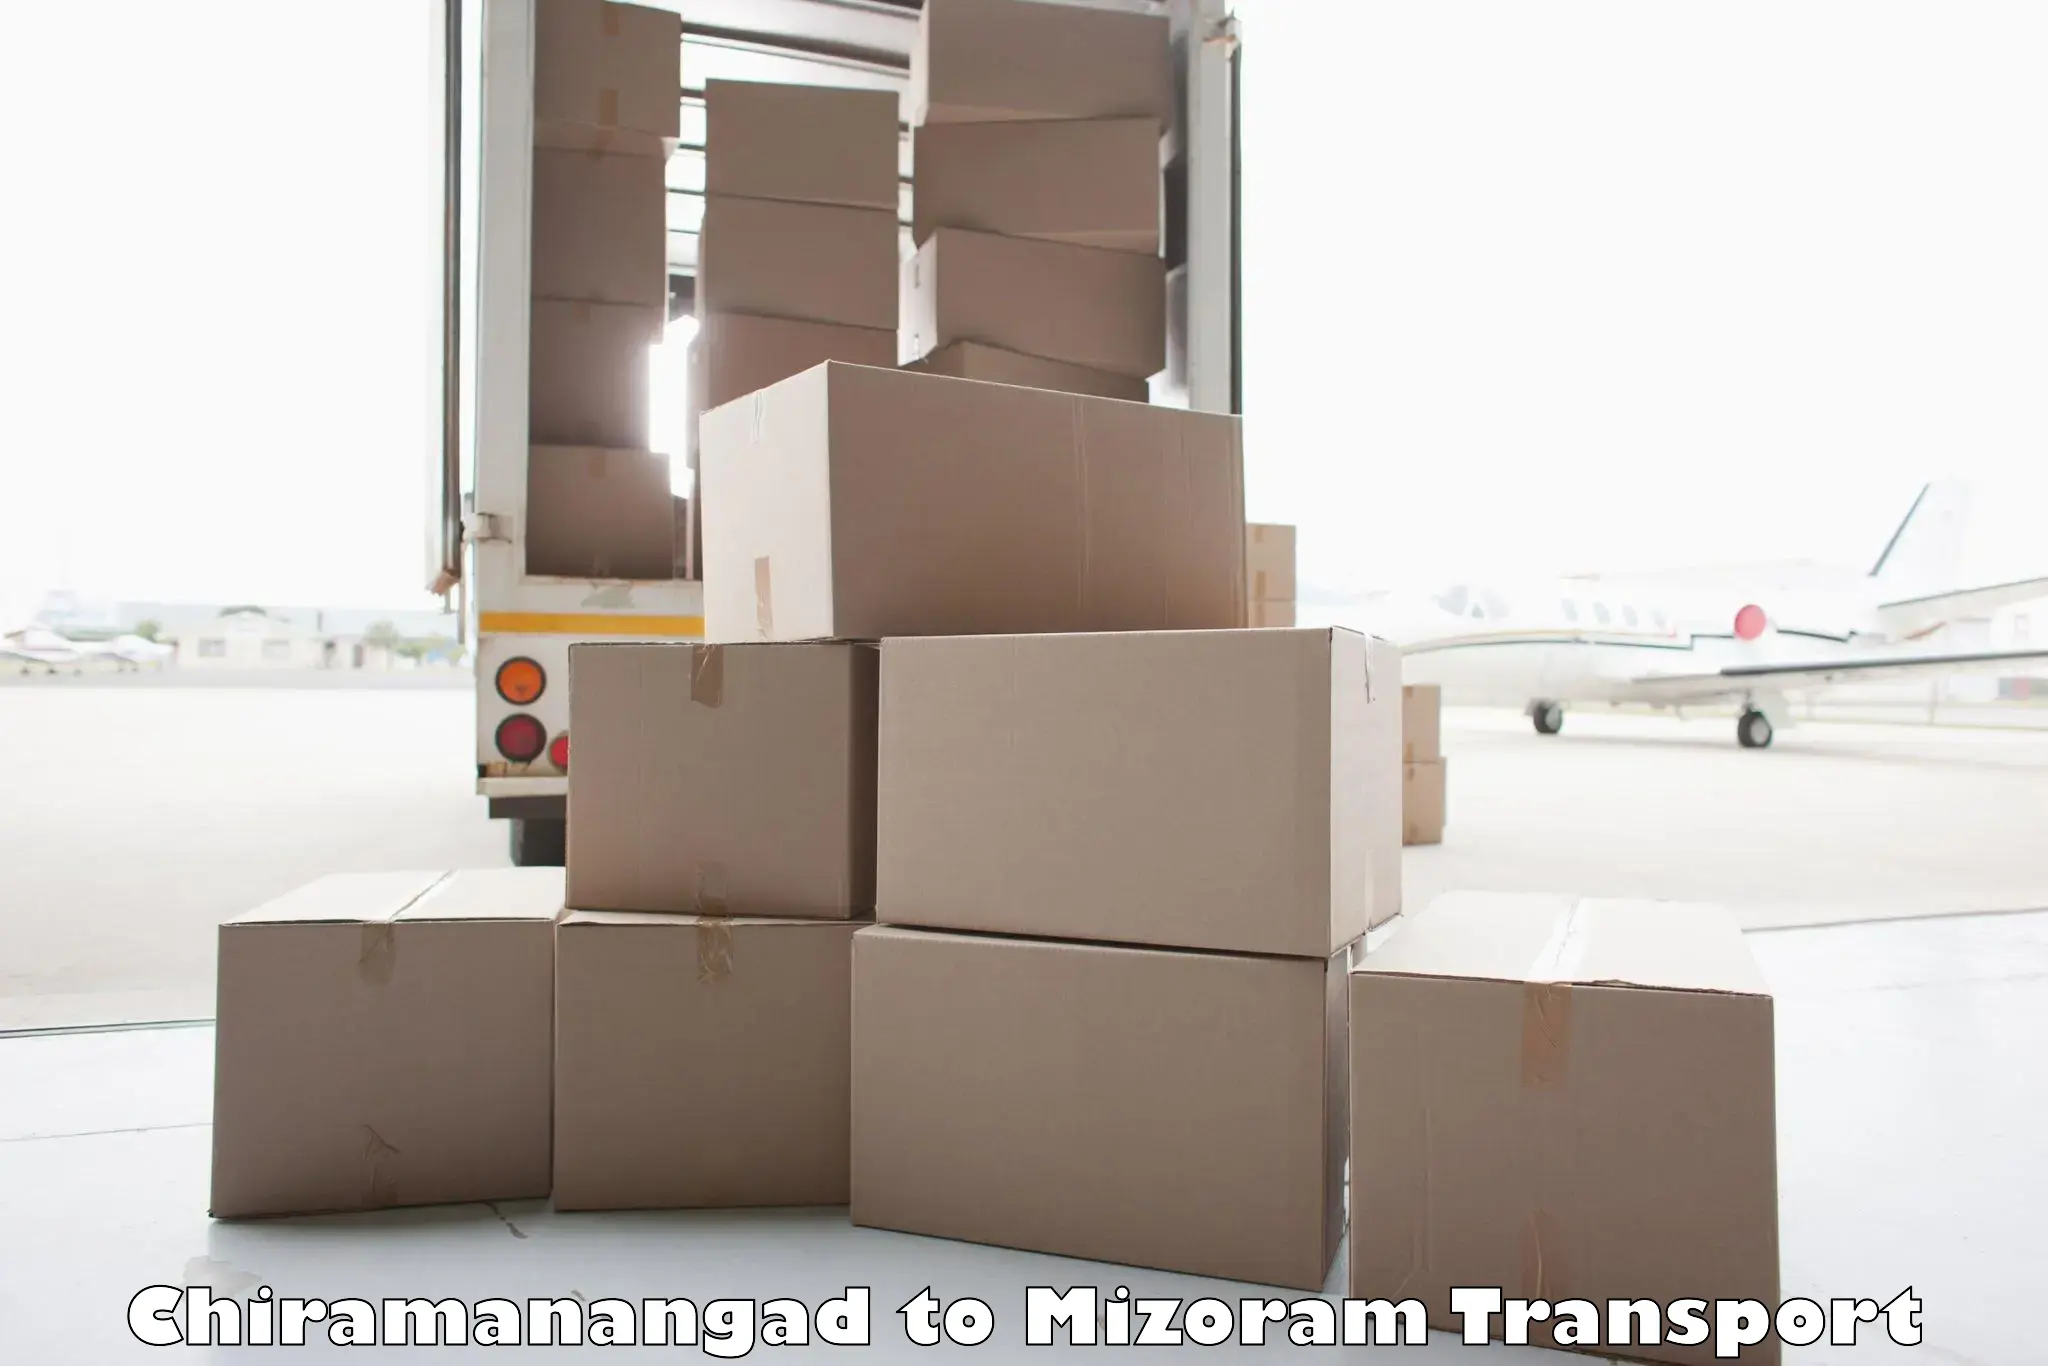 Vehicle parcel service Chiramanangad to Aizawl